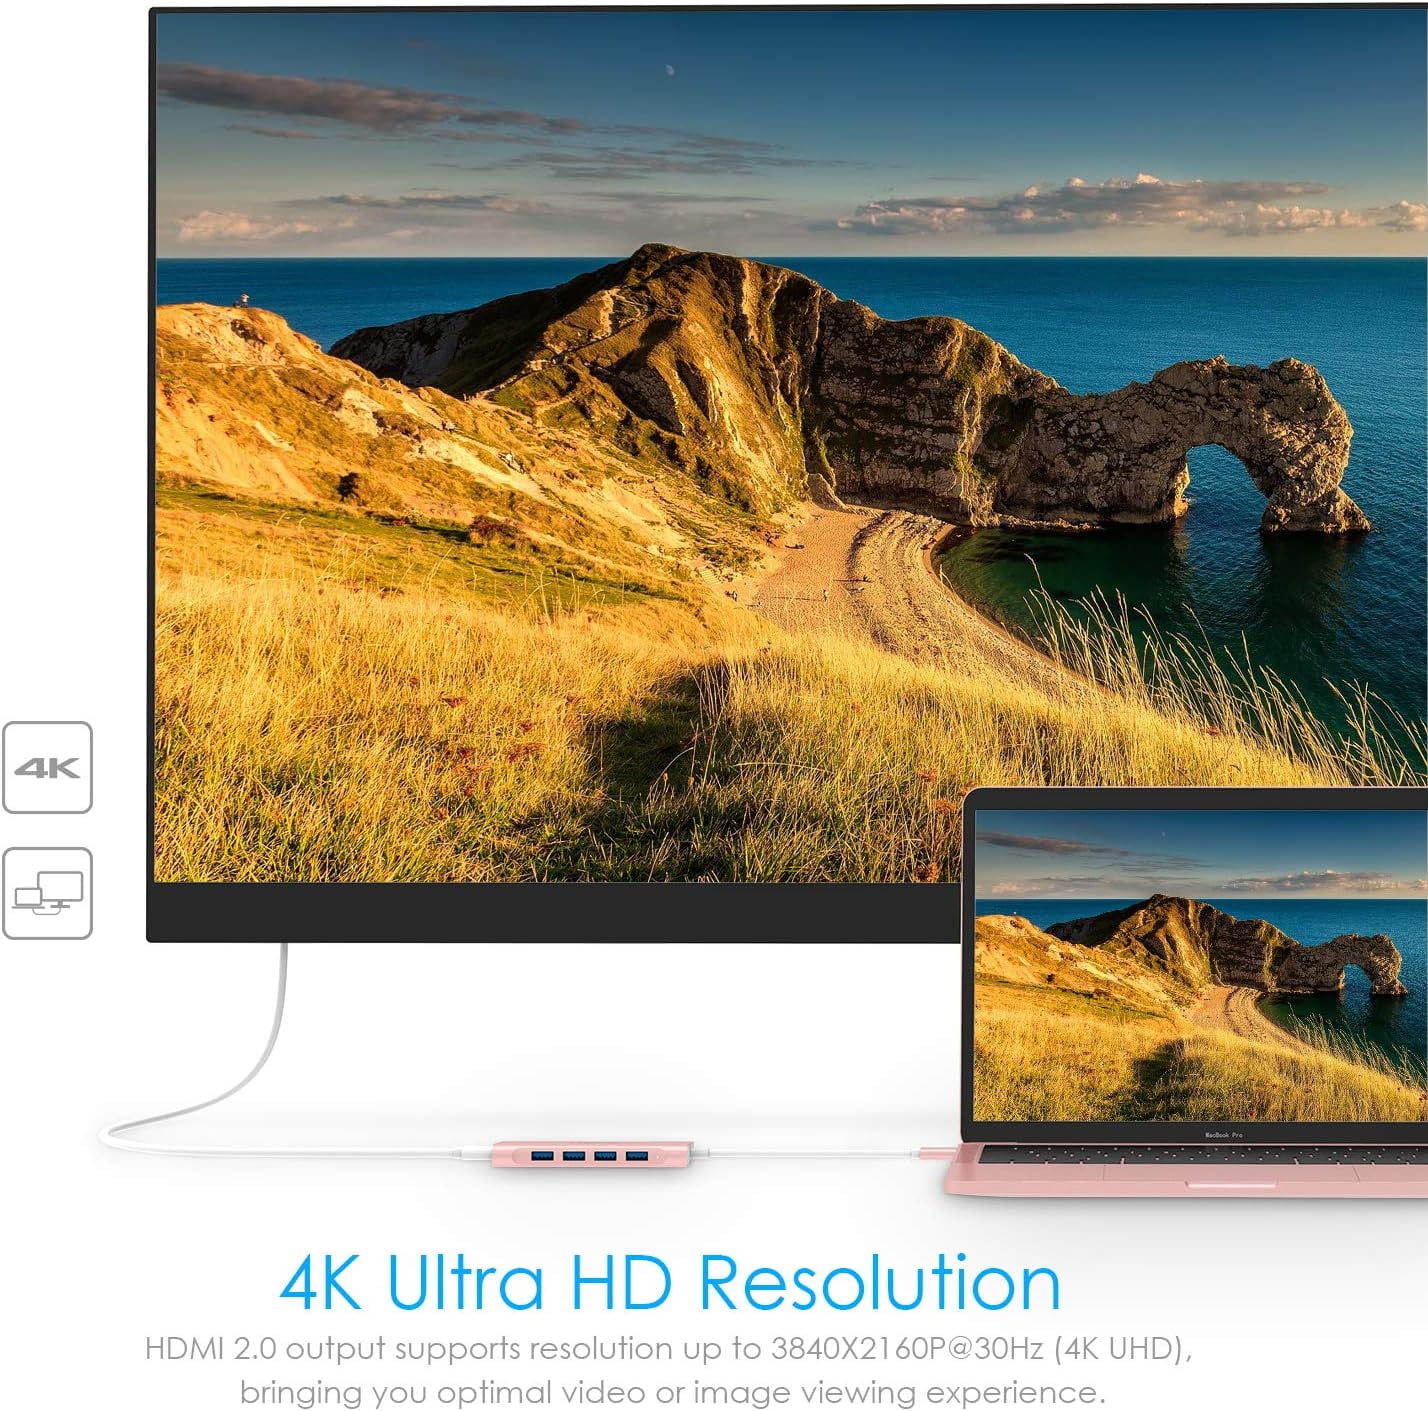  LENTION Hub multipuerto USB C de 3.3 pies de largo con HDMI 4K,  4 USB 3.0, carga tipo C, compatible con MacBook Pro 2023-2016, nuevo Mac  Air/iMac/Mac Mini, más, adaptador de